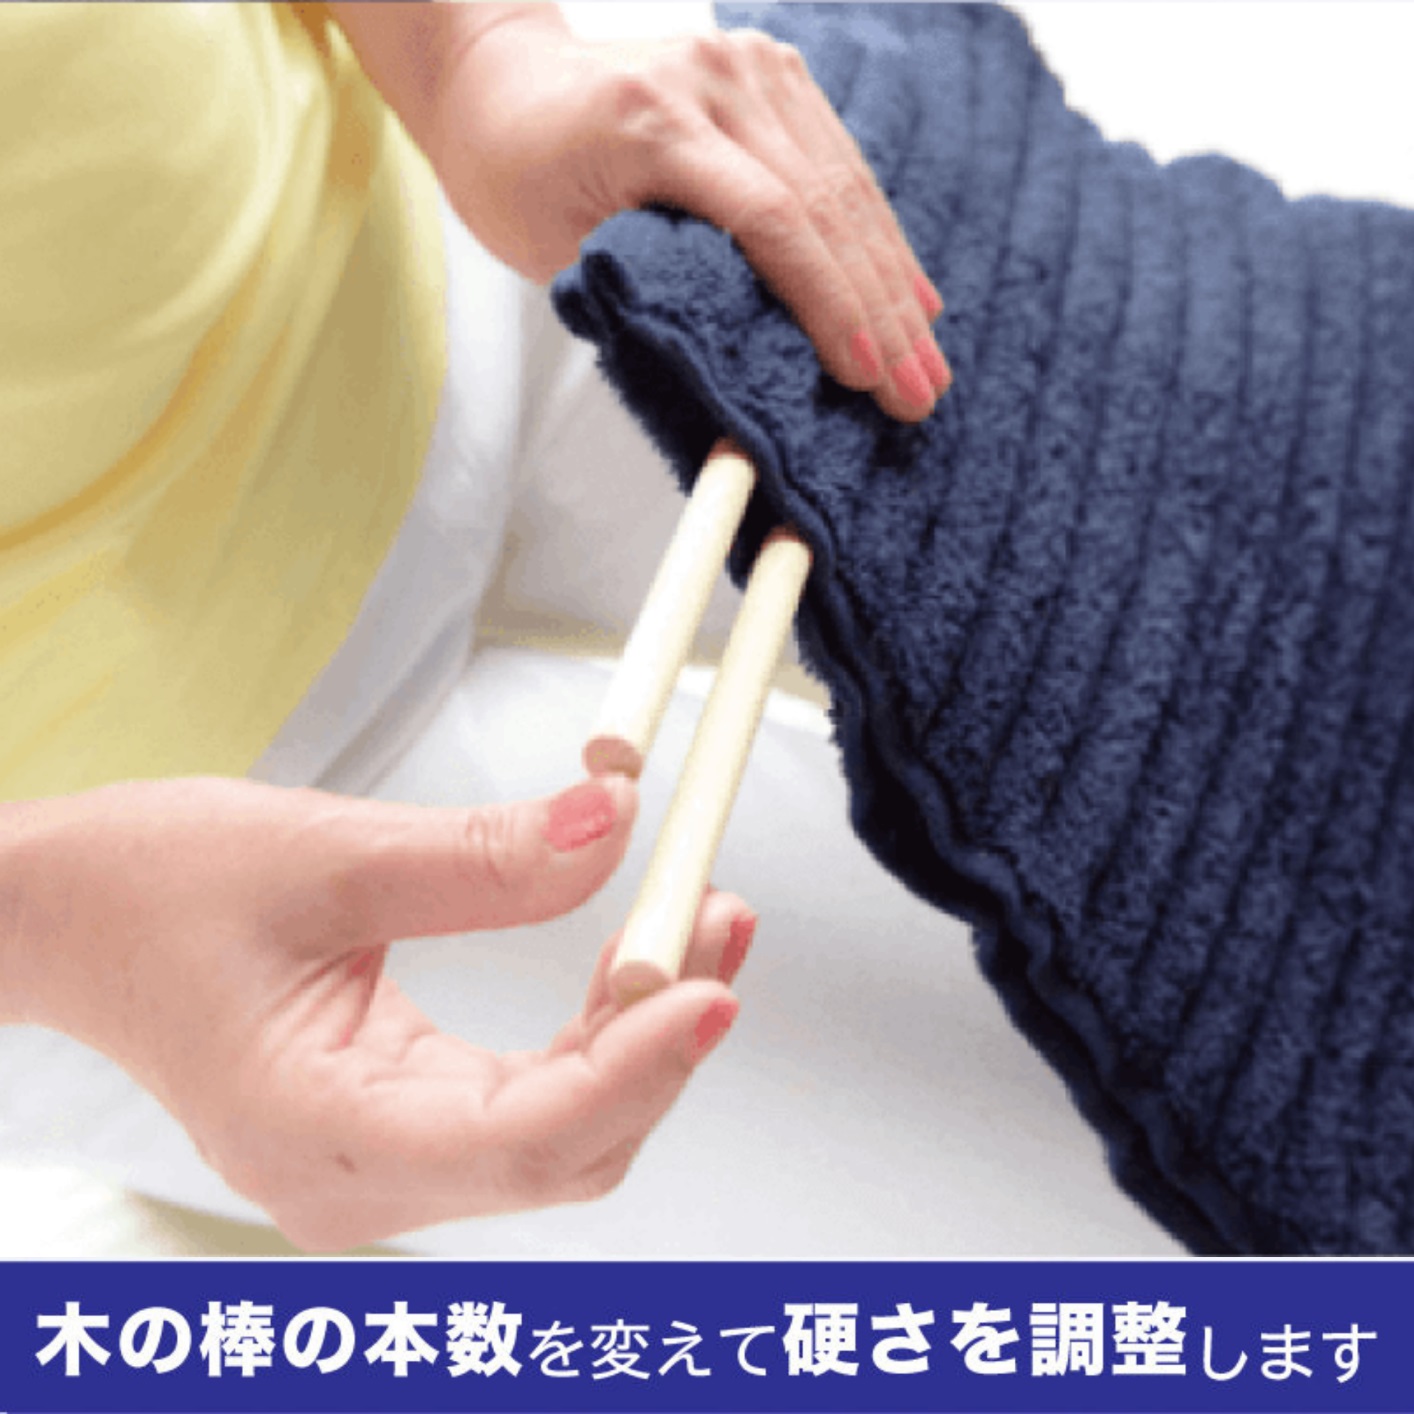 コリ吉ロール - お買い物 - 「高さ」「硬さ」「形状」が自由に変えられる枕